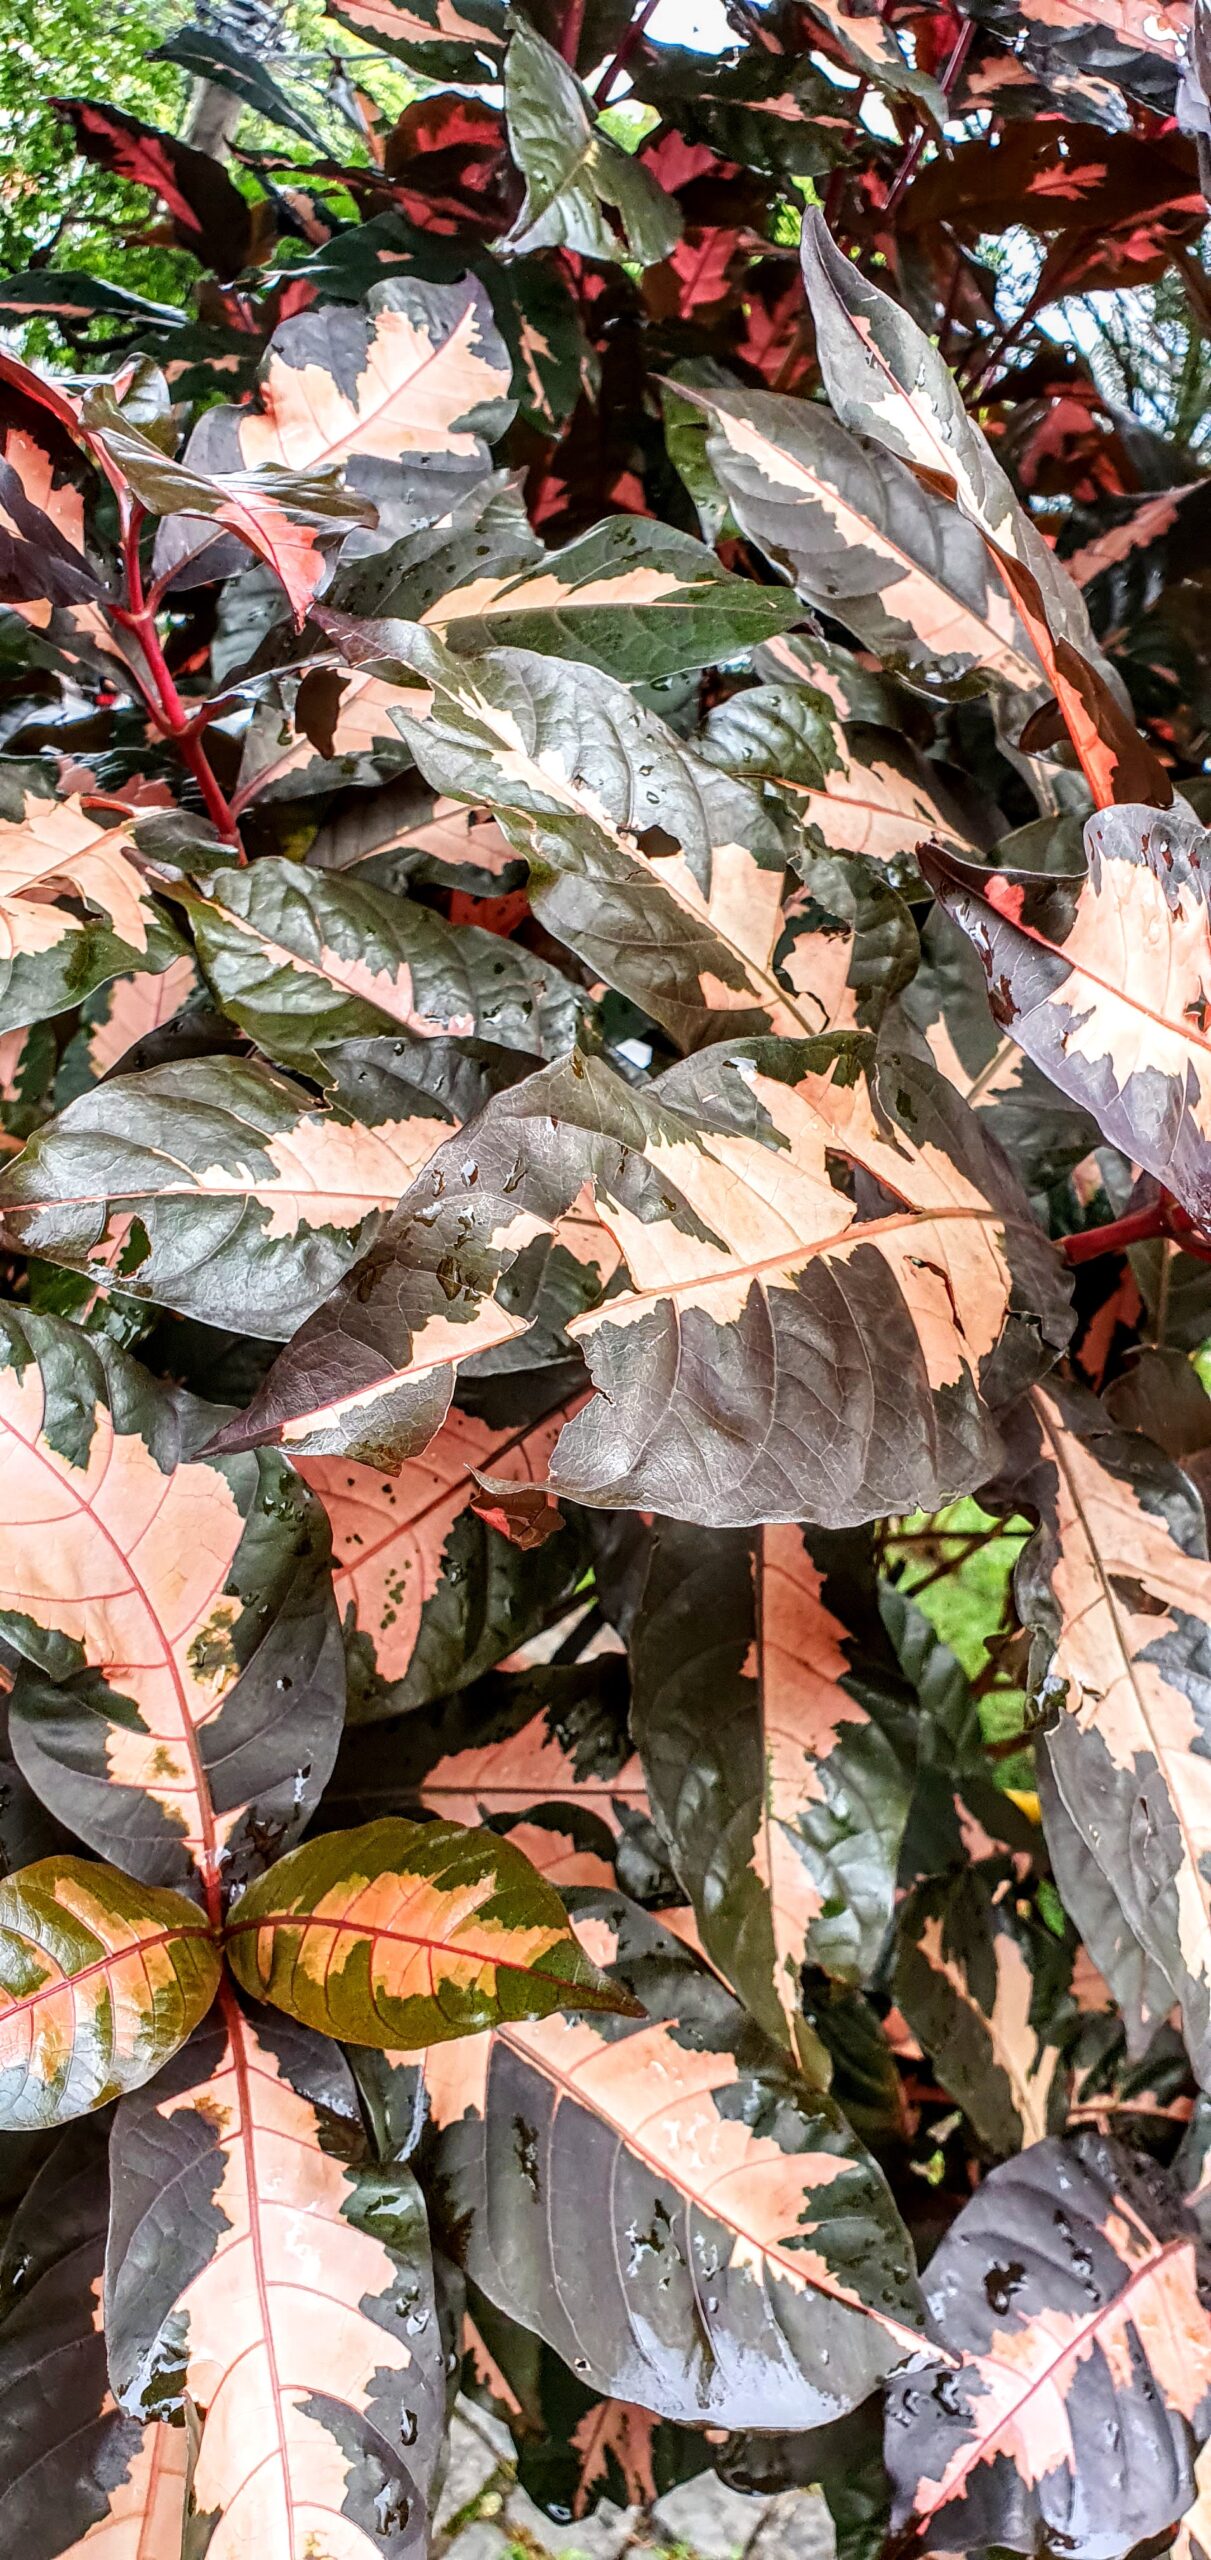 Detalhe da folhagem da planta-caricata, com suas cores chamativas e os desenhos irregulares.